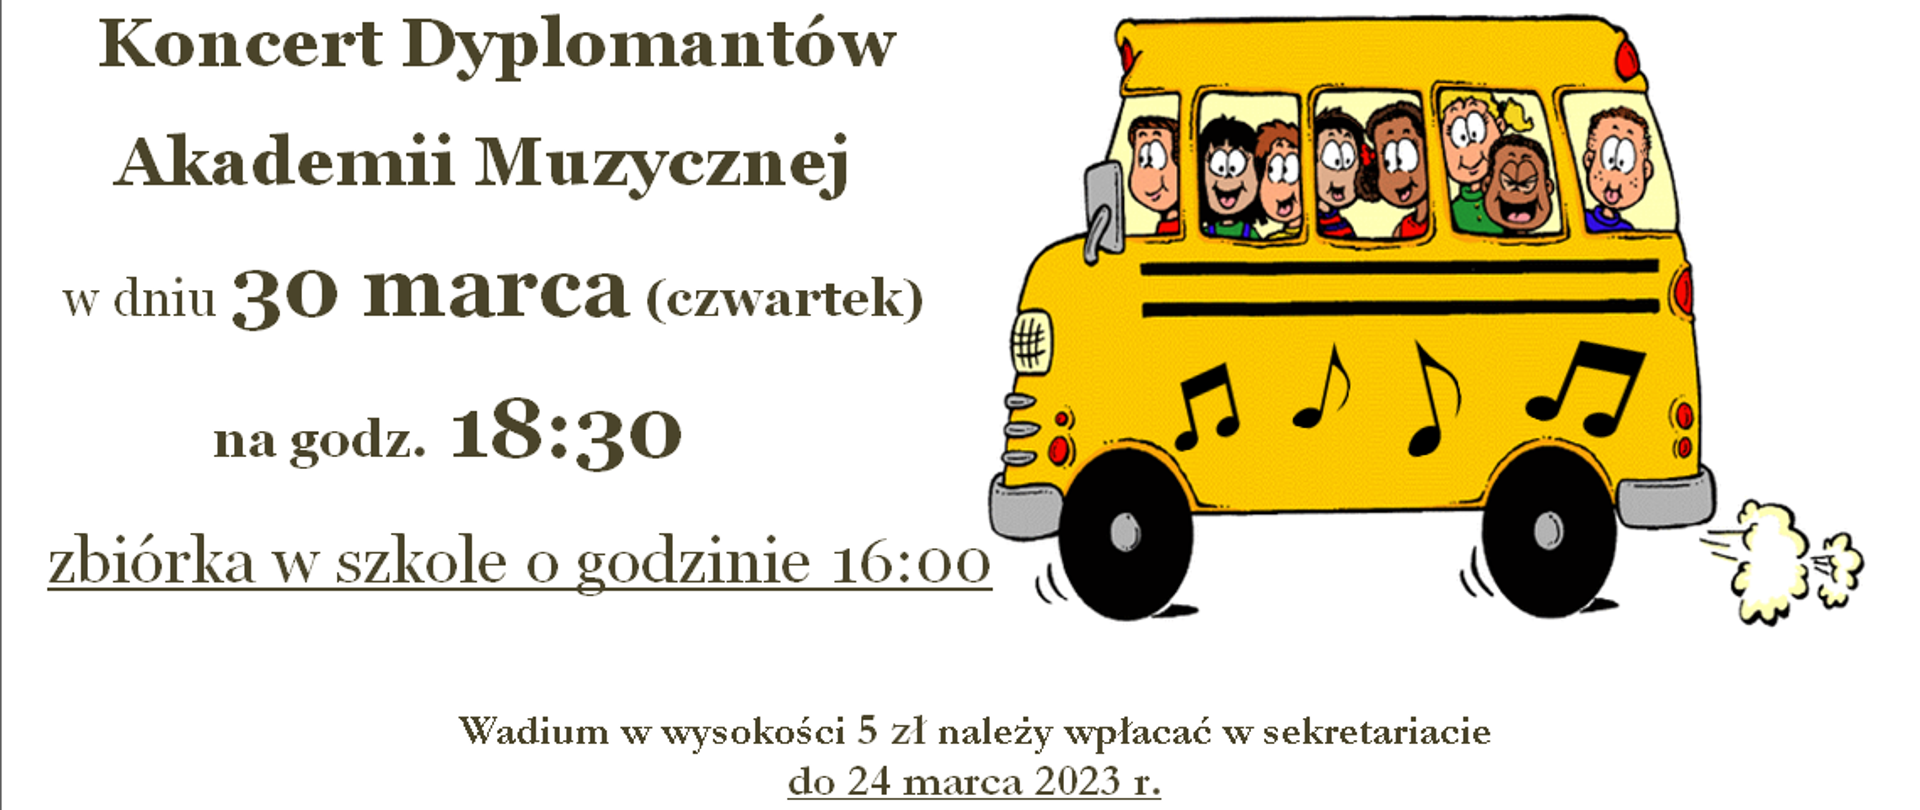 Ogłoszenie przedstawia informacje dot. wyjazdu na Koncert Dyplomantów Akademii Muzycznej w Gdańsku 30 marca o godz. 18:30. Z prawej strony widnieje żółty autobus z dziećmi.